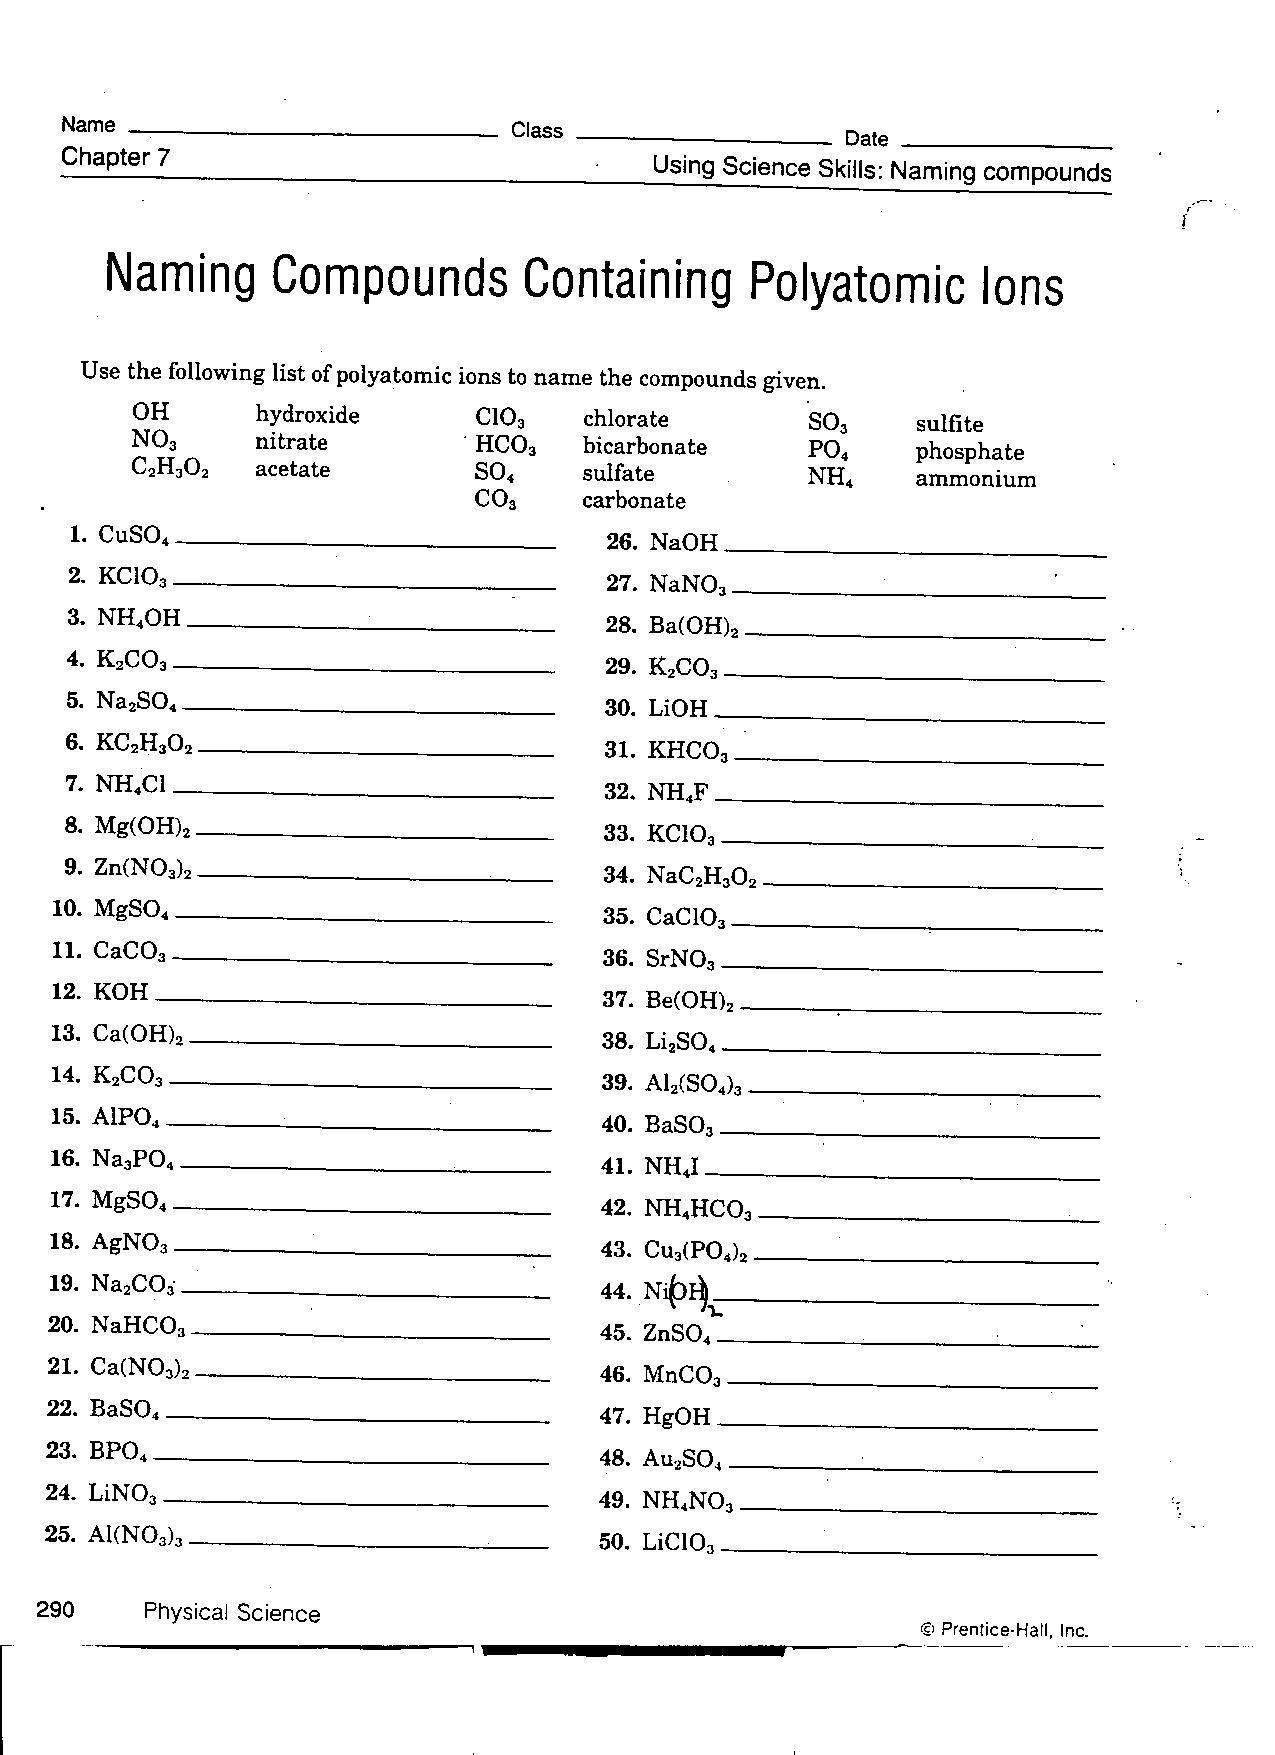 Polyatomic Ions Worksheet Sample Free Download - Worksheet Within Polyatomic Ions Worksheet Answers